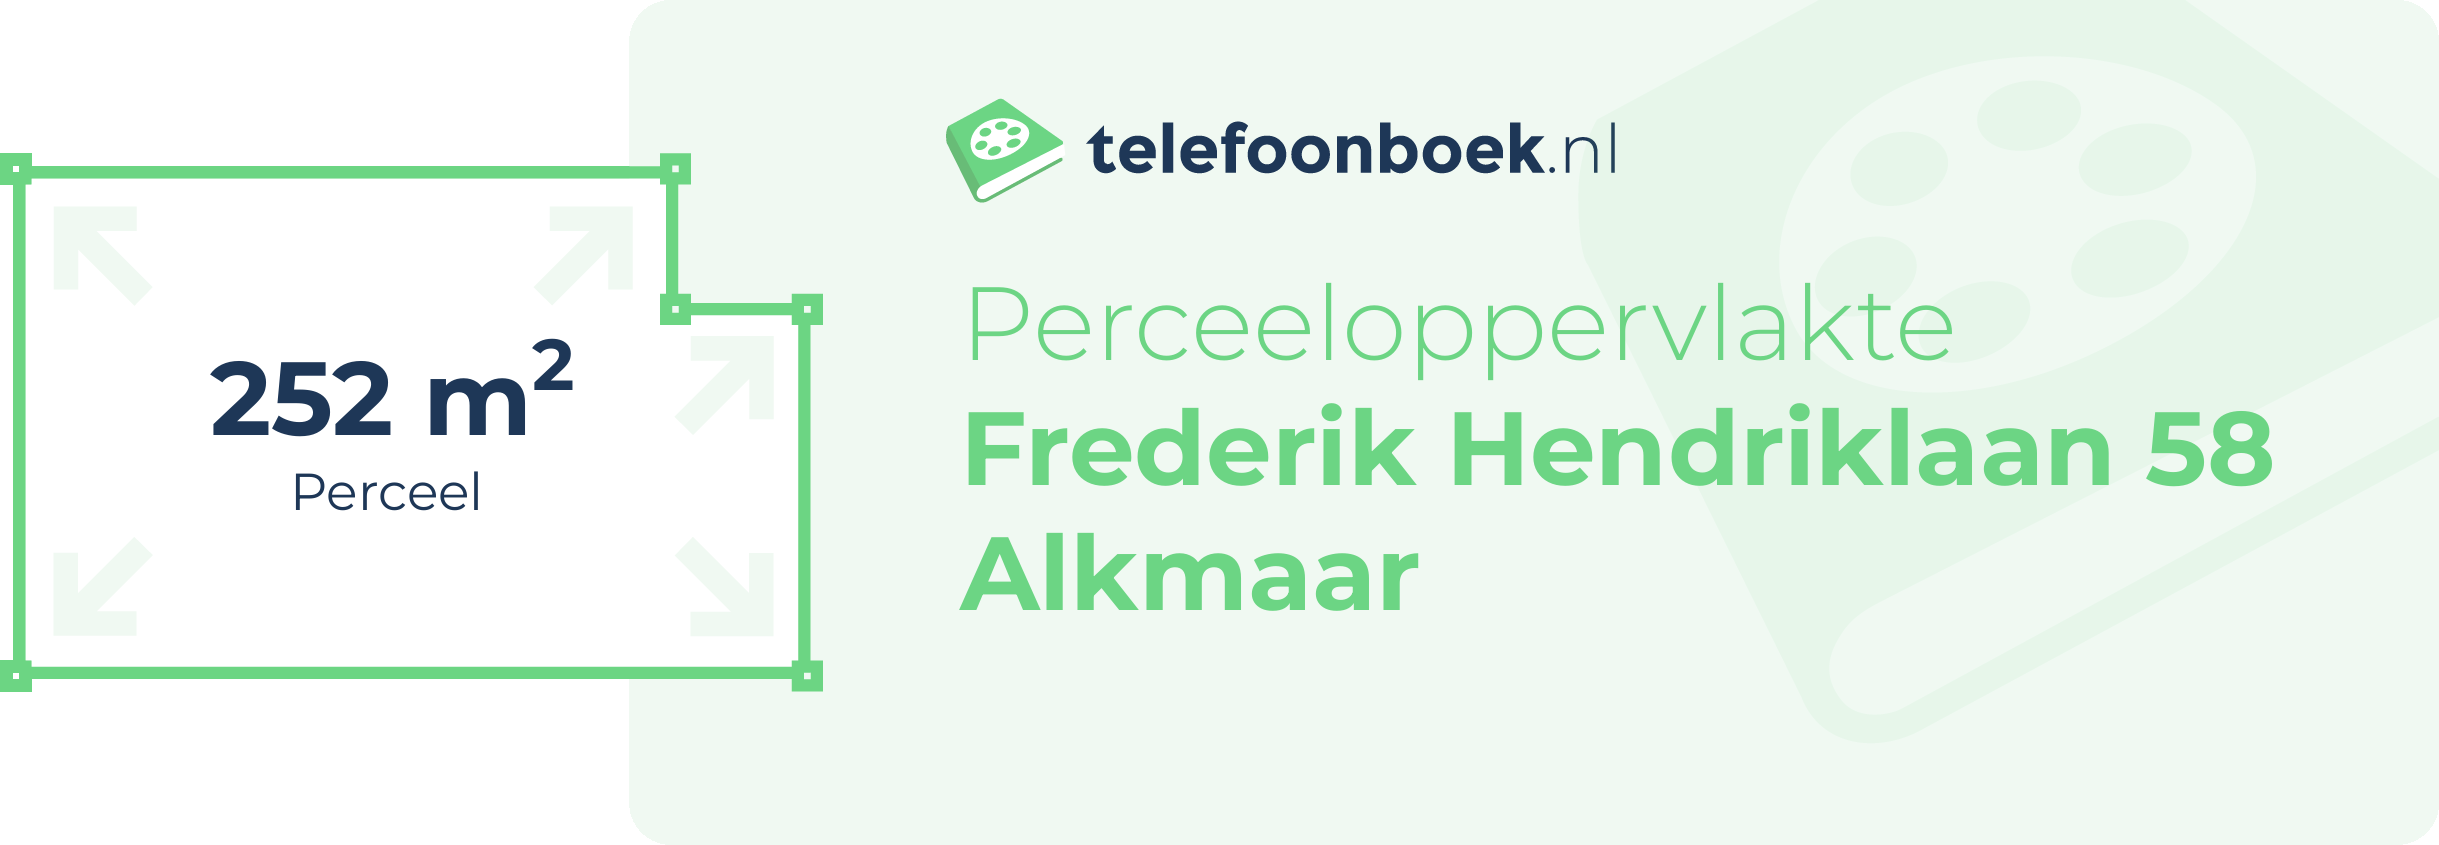 Perceeloppervlakte Frederik Hendriklaan 58 Alkmaar